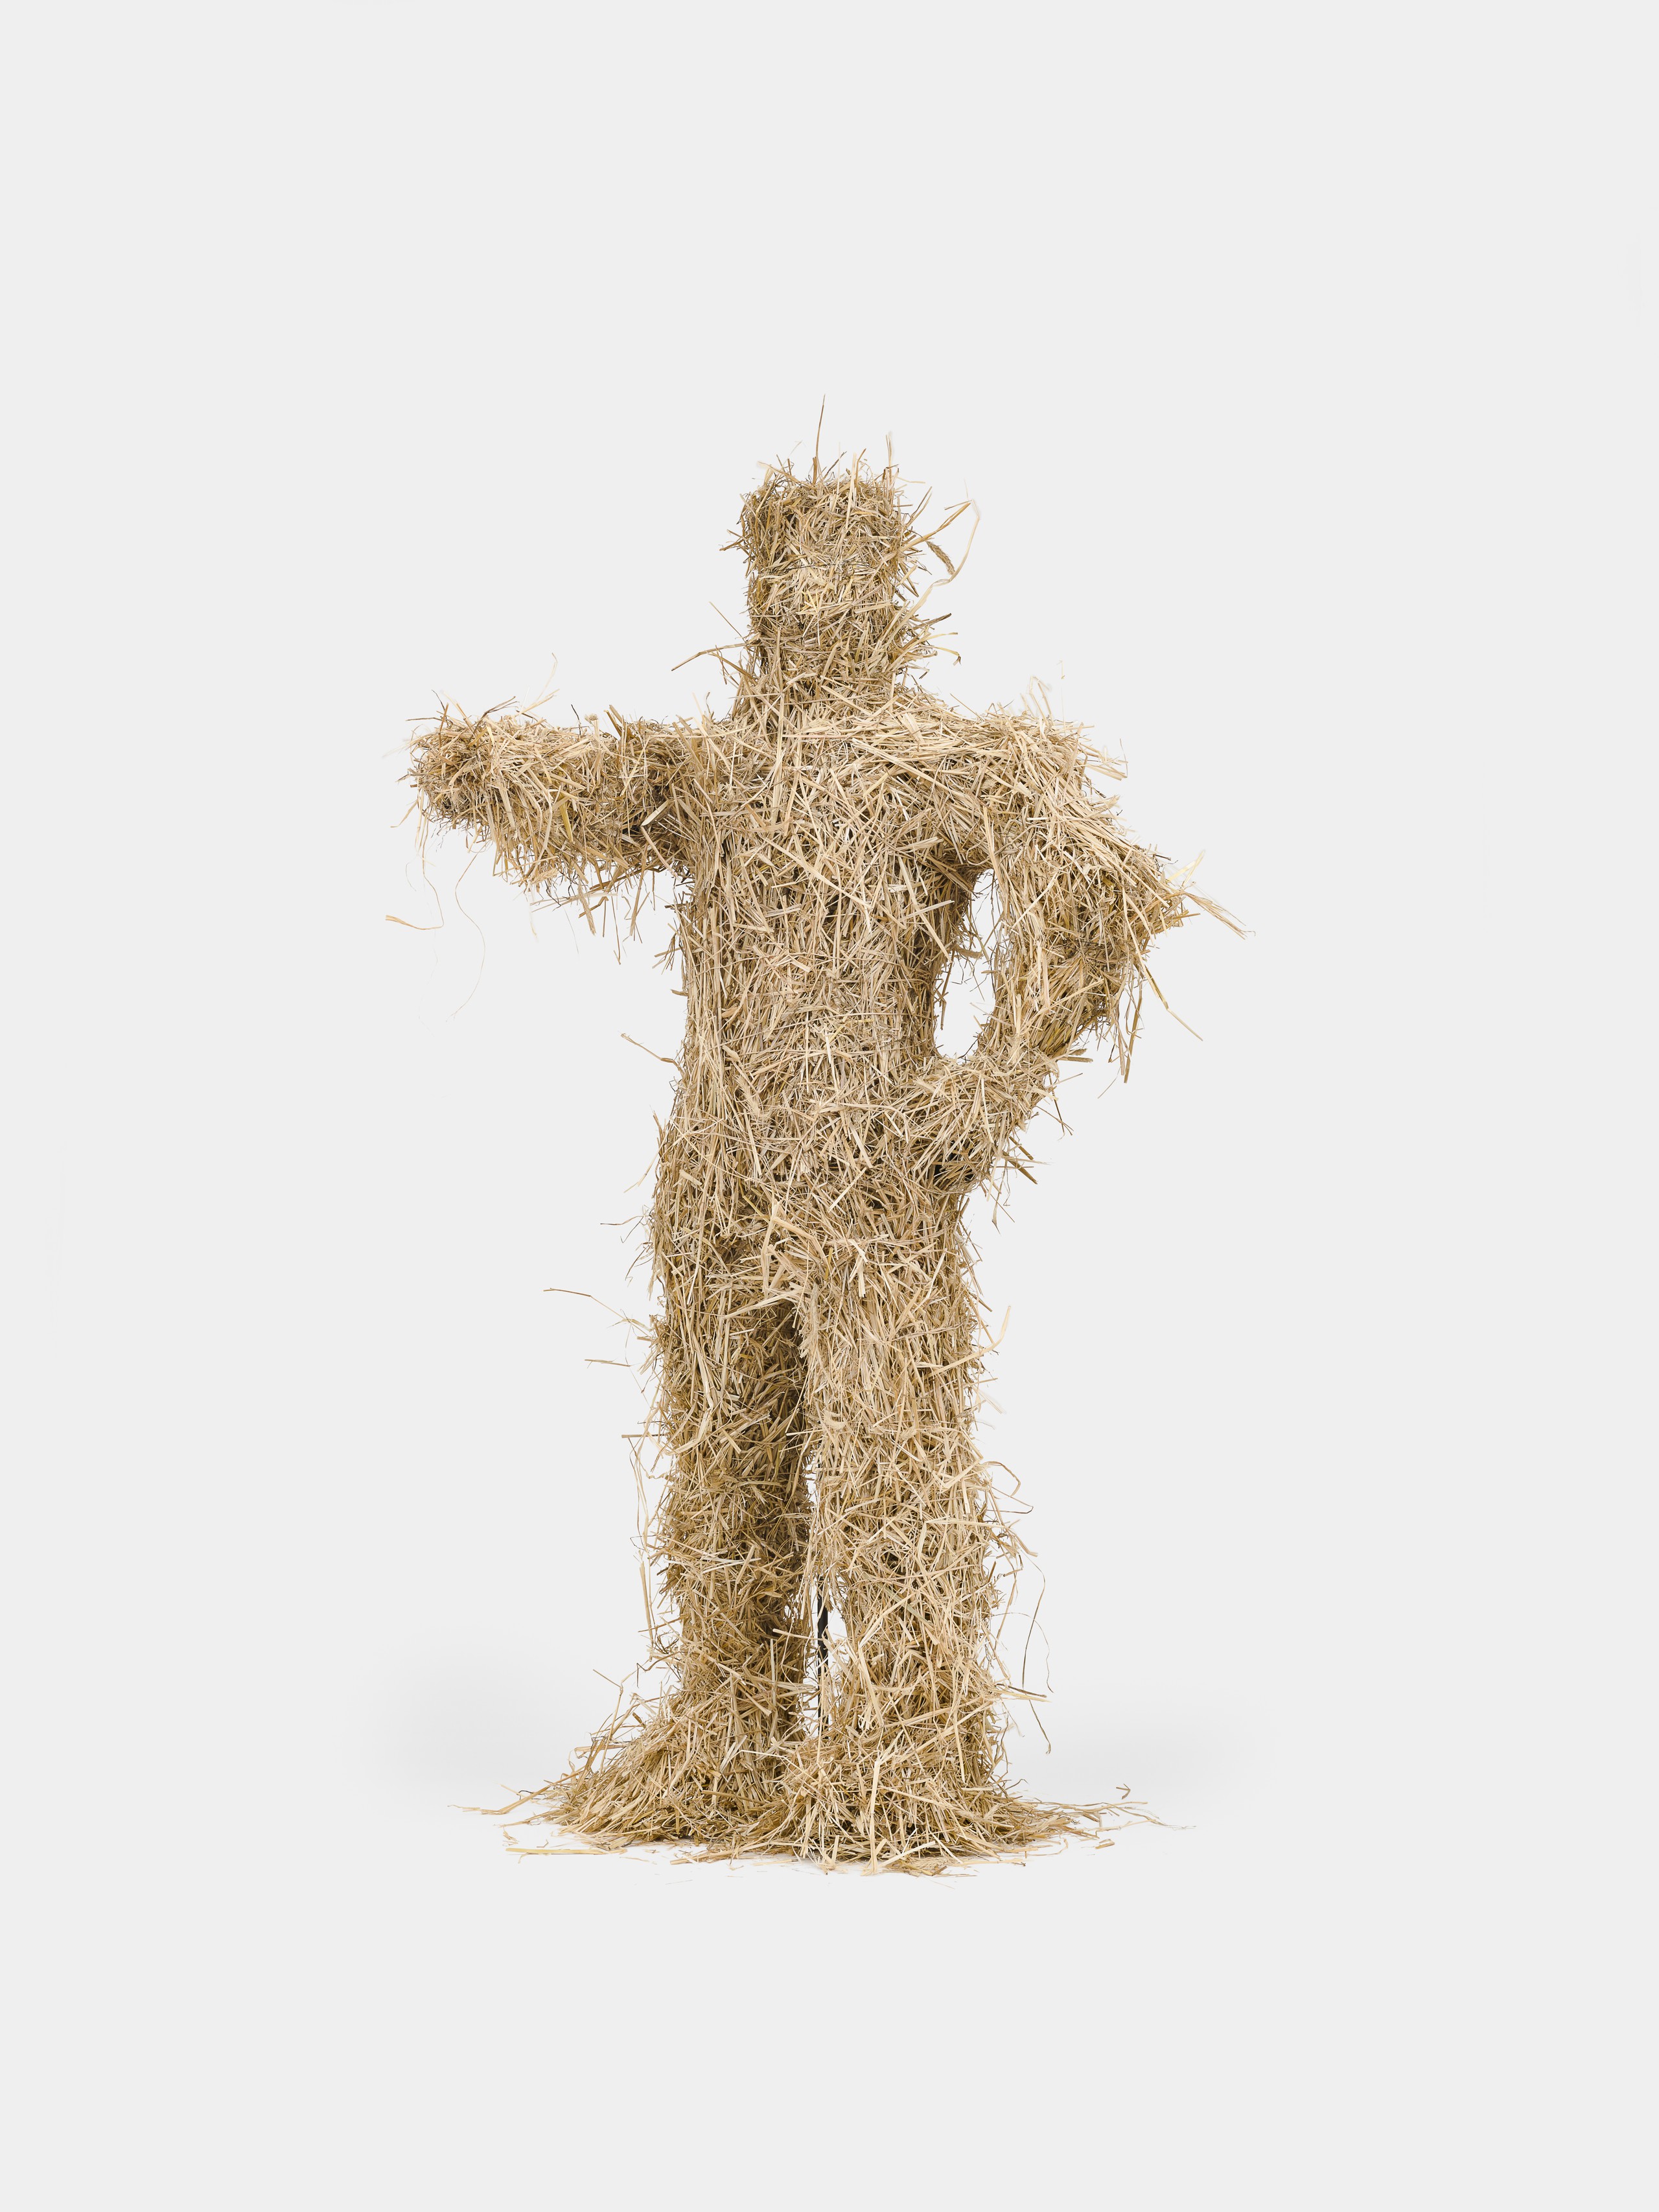 Kaspar Müller, Untitled, 2022, Straw, fiberglass, wood, steel 200 x 110 x 100 cm, 78 1/2 x 43 1/2 x 39 1/2 in